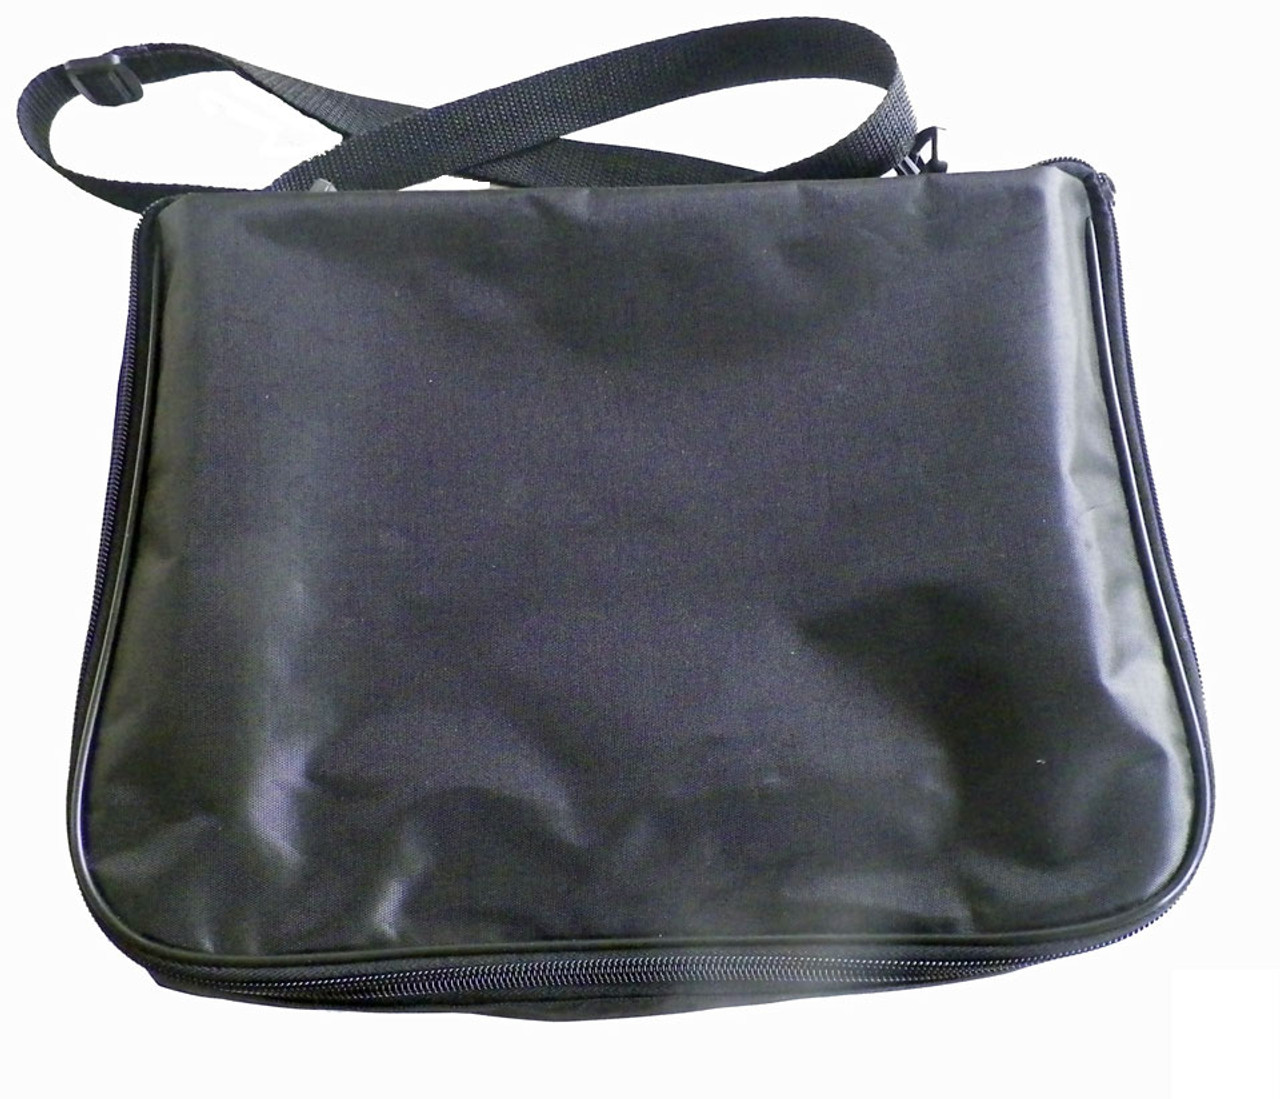 Mesh Collecting Bag- Adjustable Clip-on Shoulder Strap